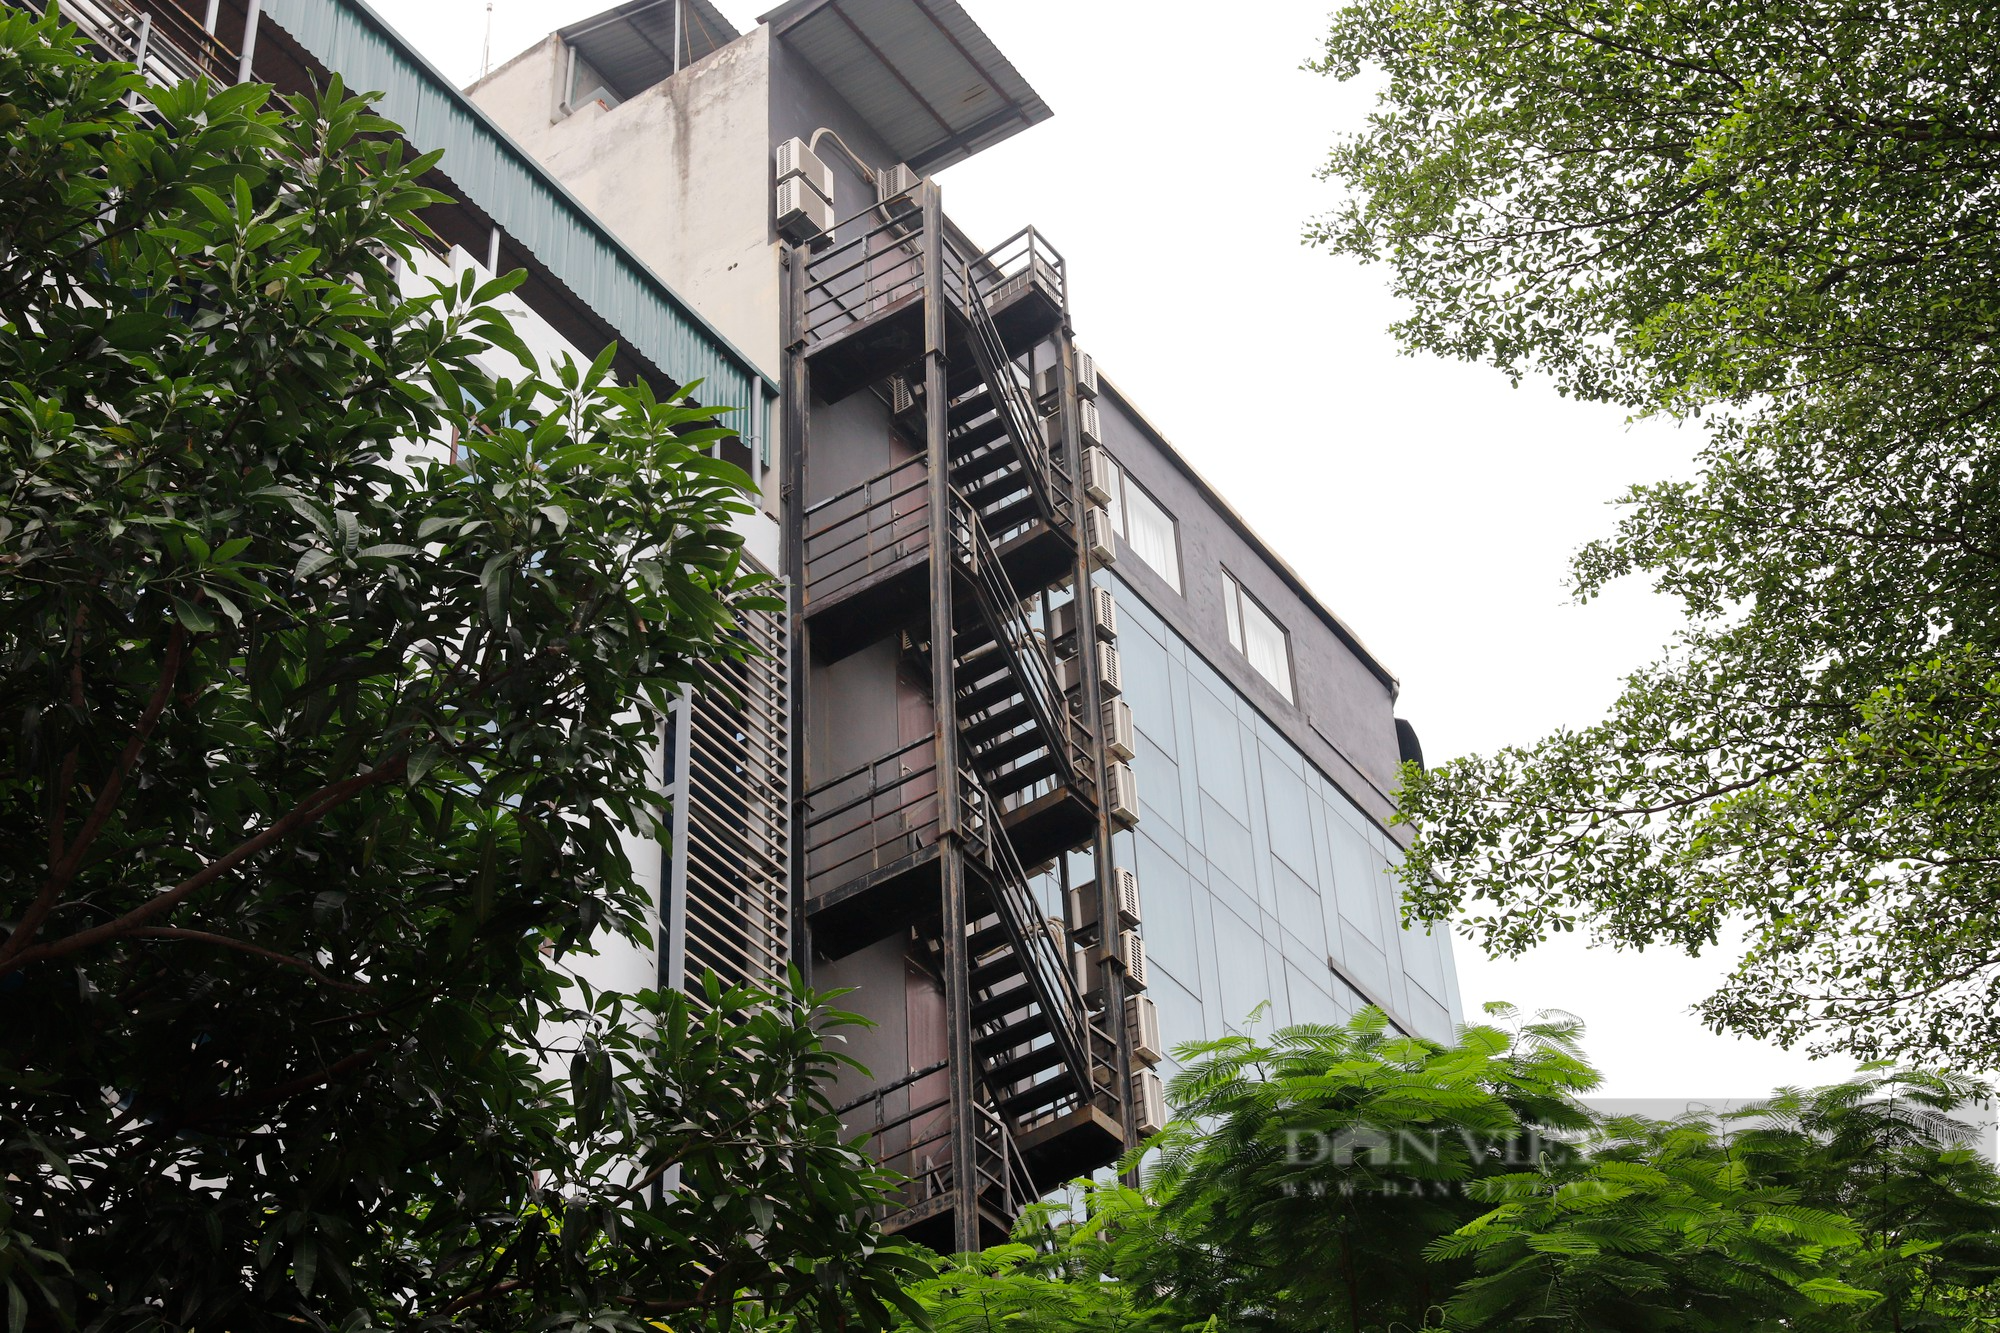 Chung cư mini, khách sạn tại Hà Nội lắp thang thoát hiểm hàng trăm triệu đồng - Ảnh 12.